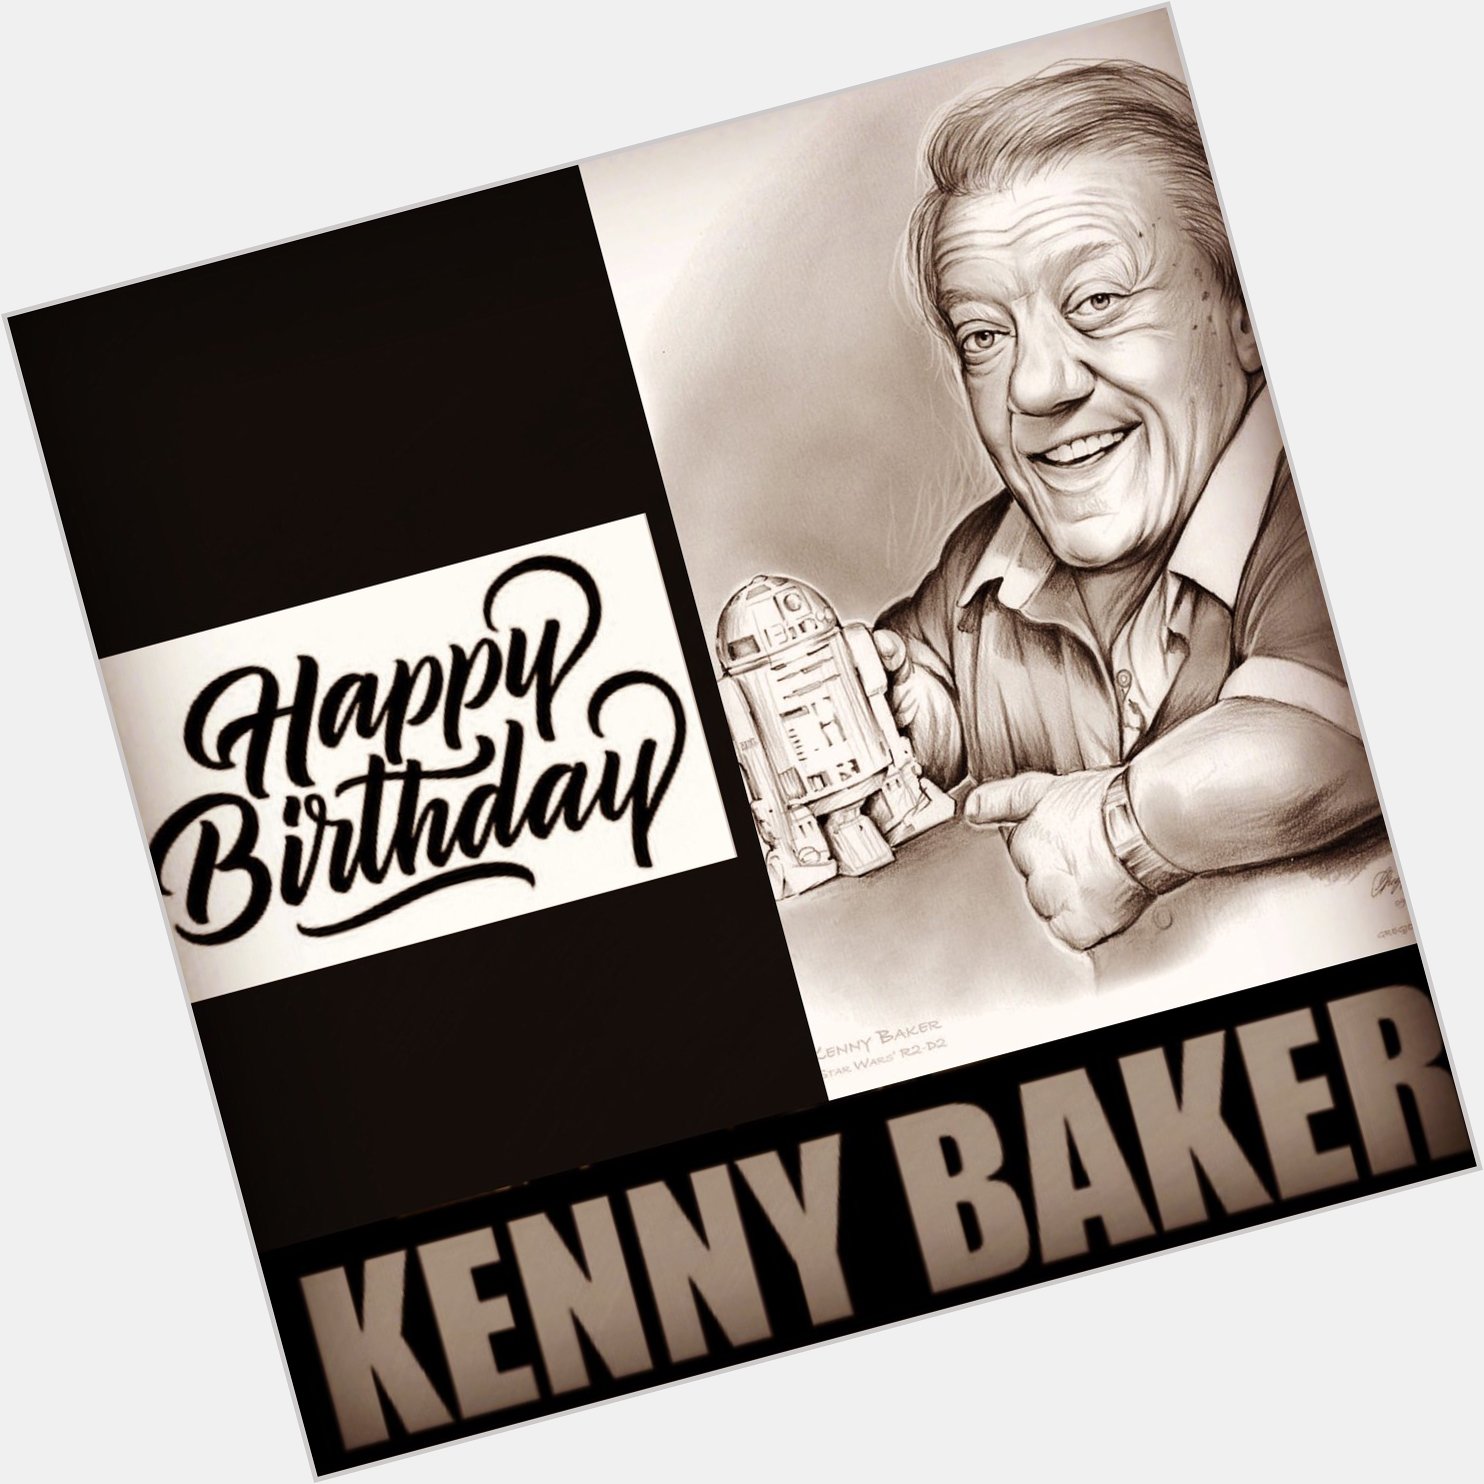 Happy birthday Kenny Baker - Star Wars 